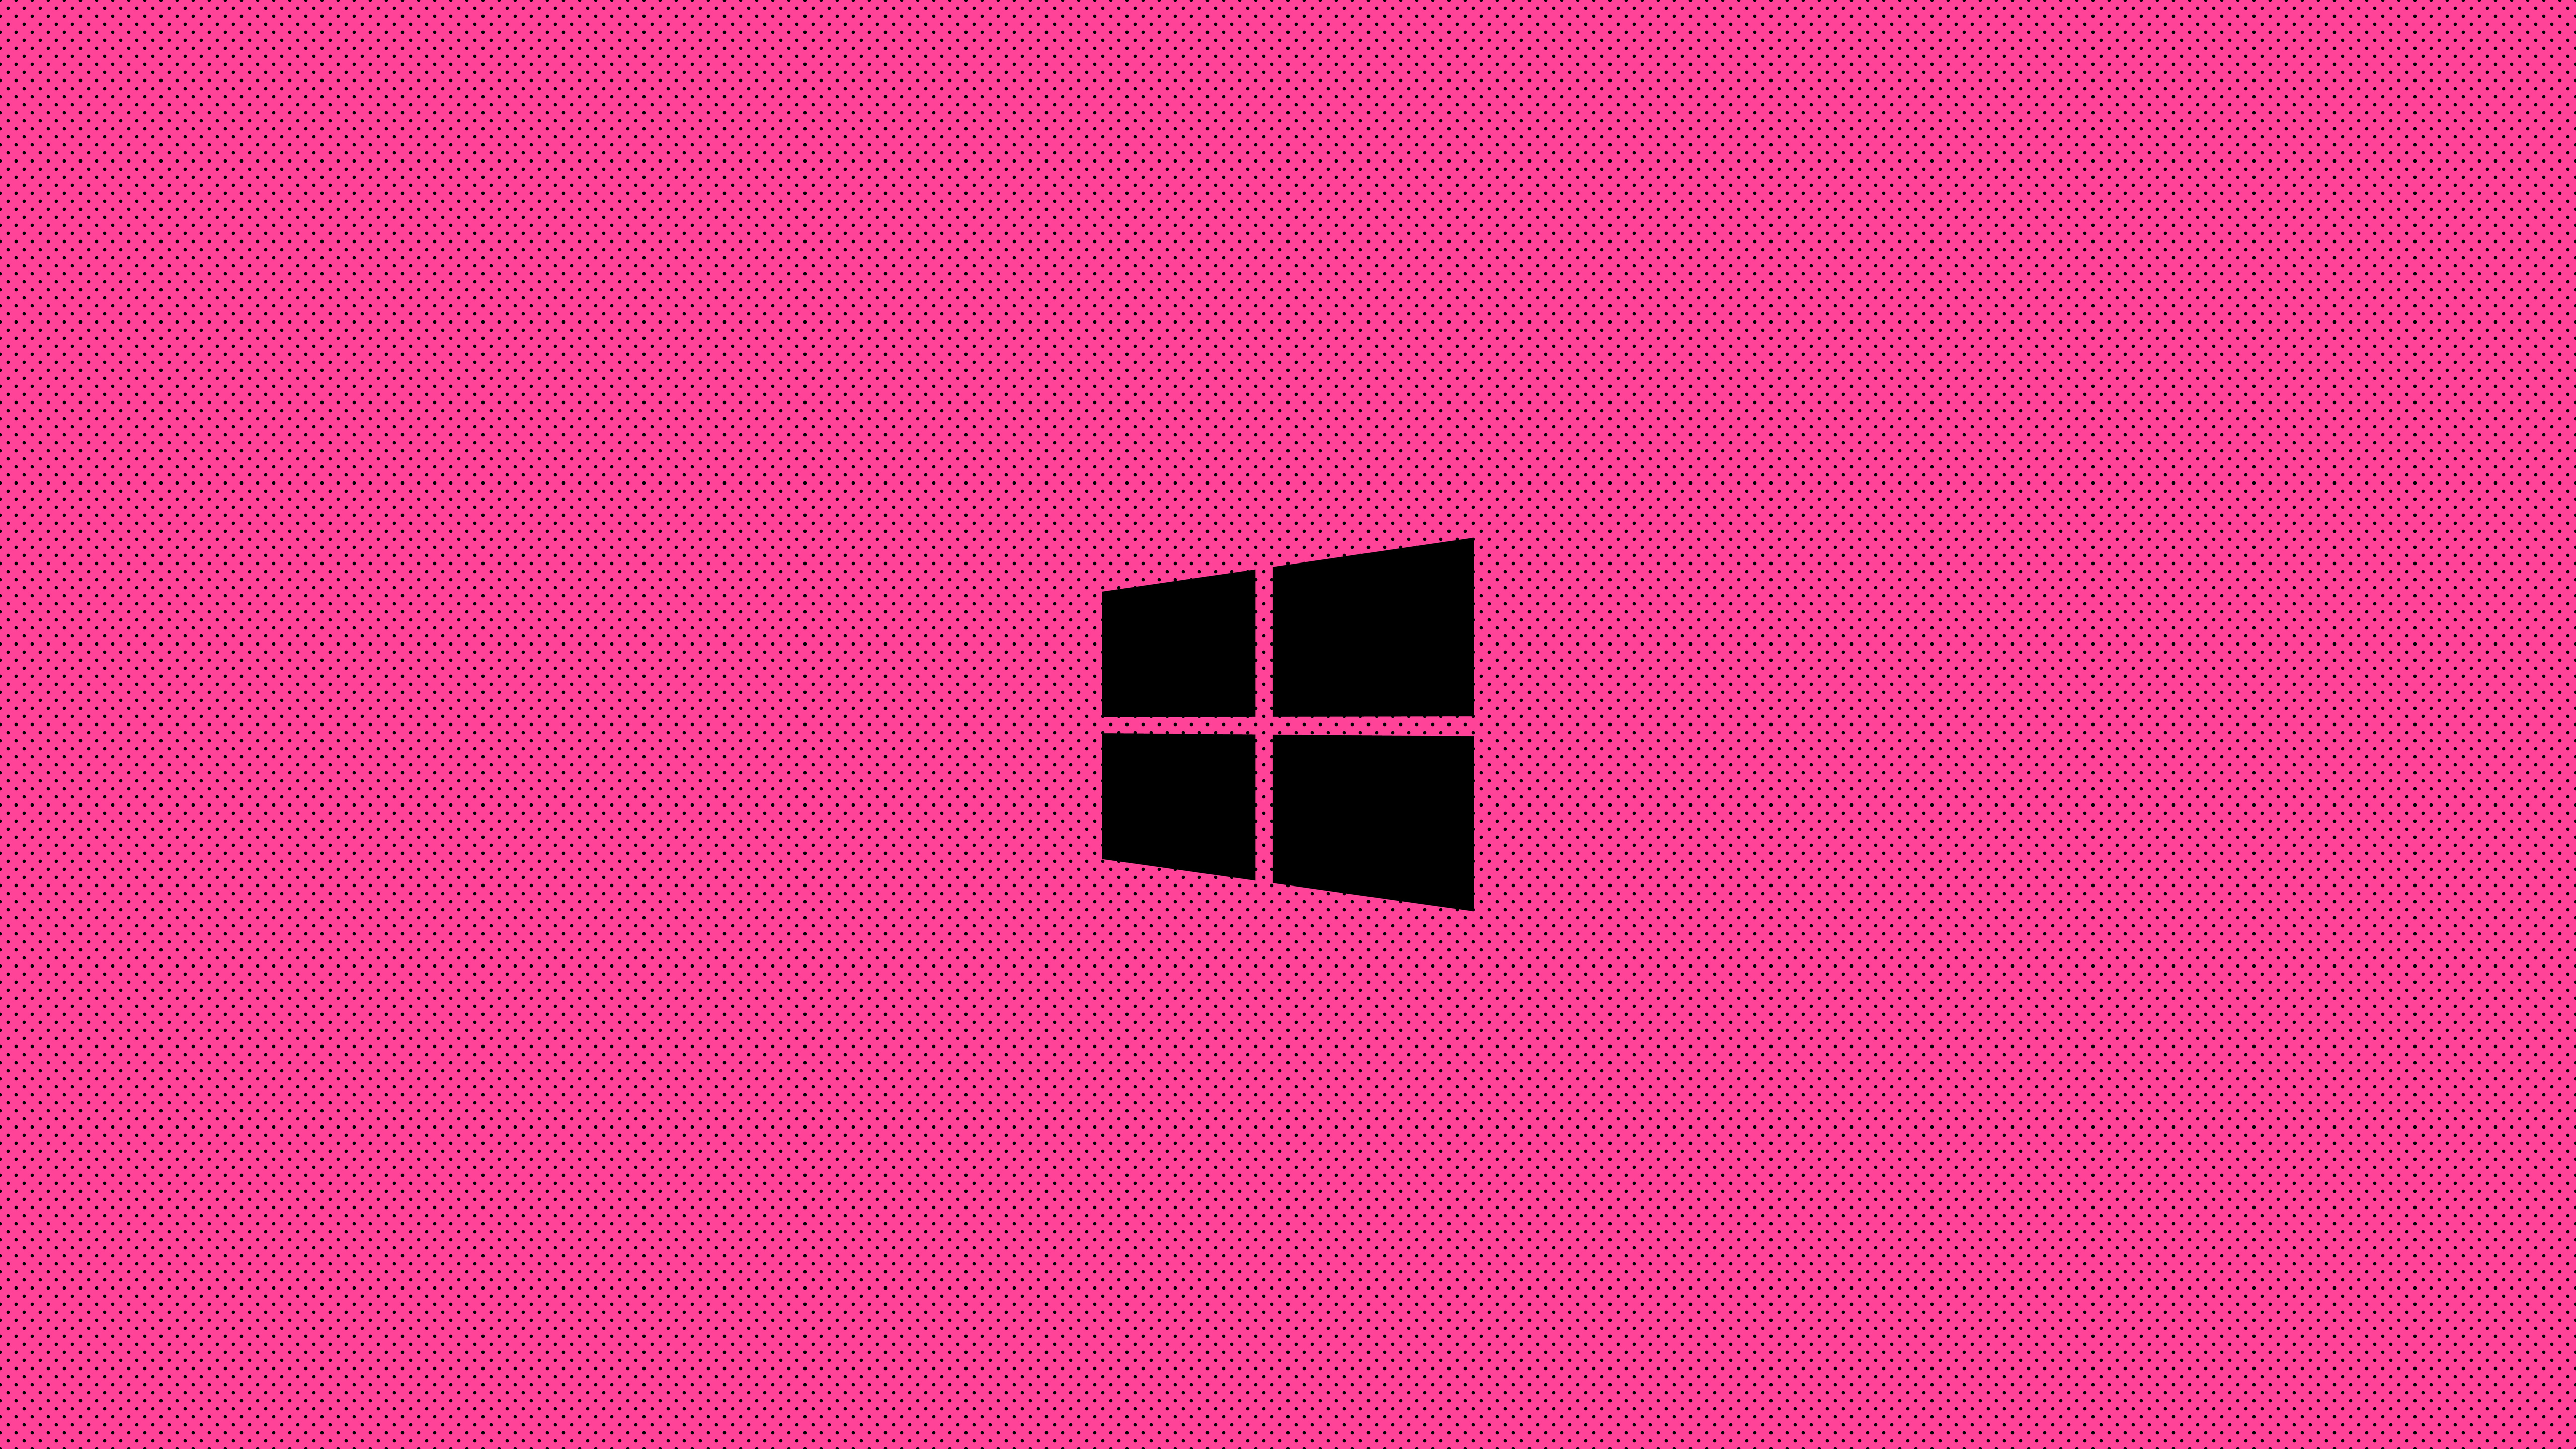 windows-pink-minimal-logo-8k-68.jpg